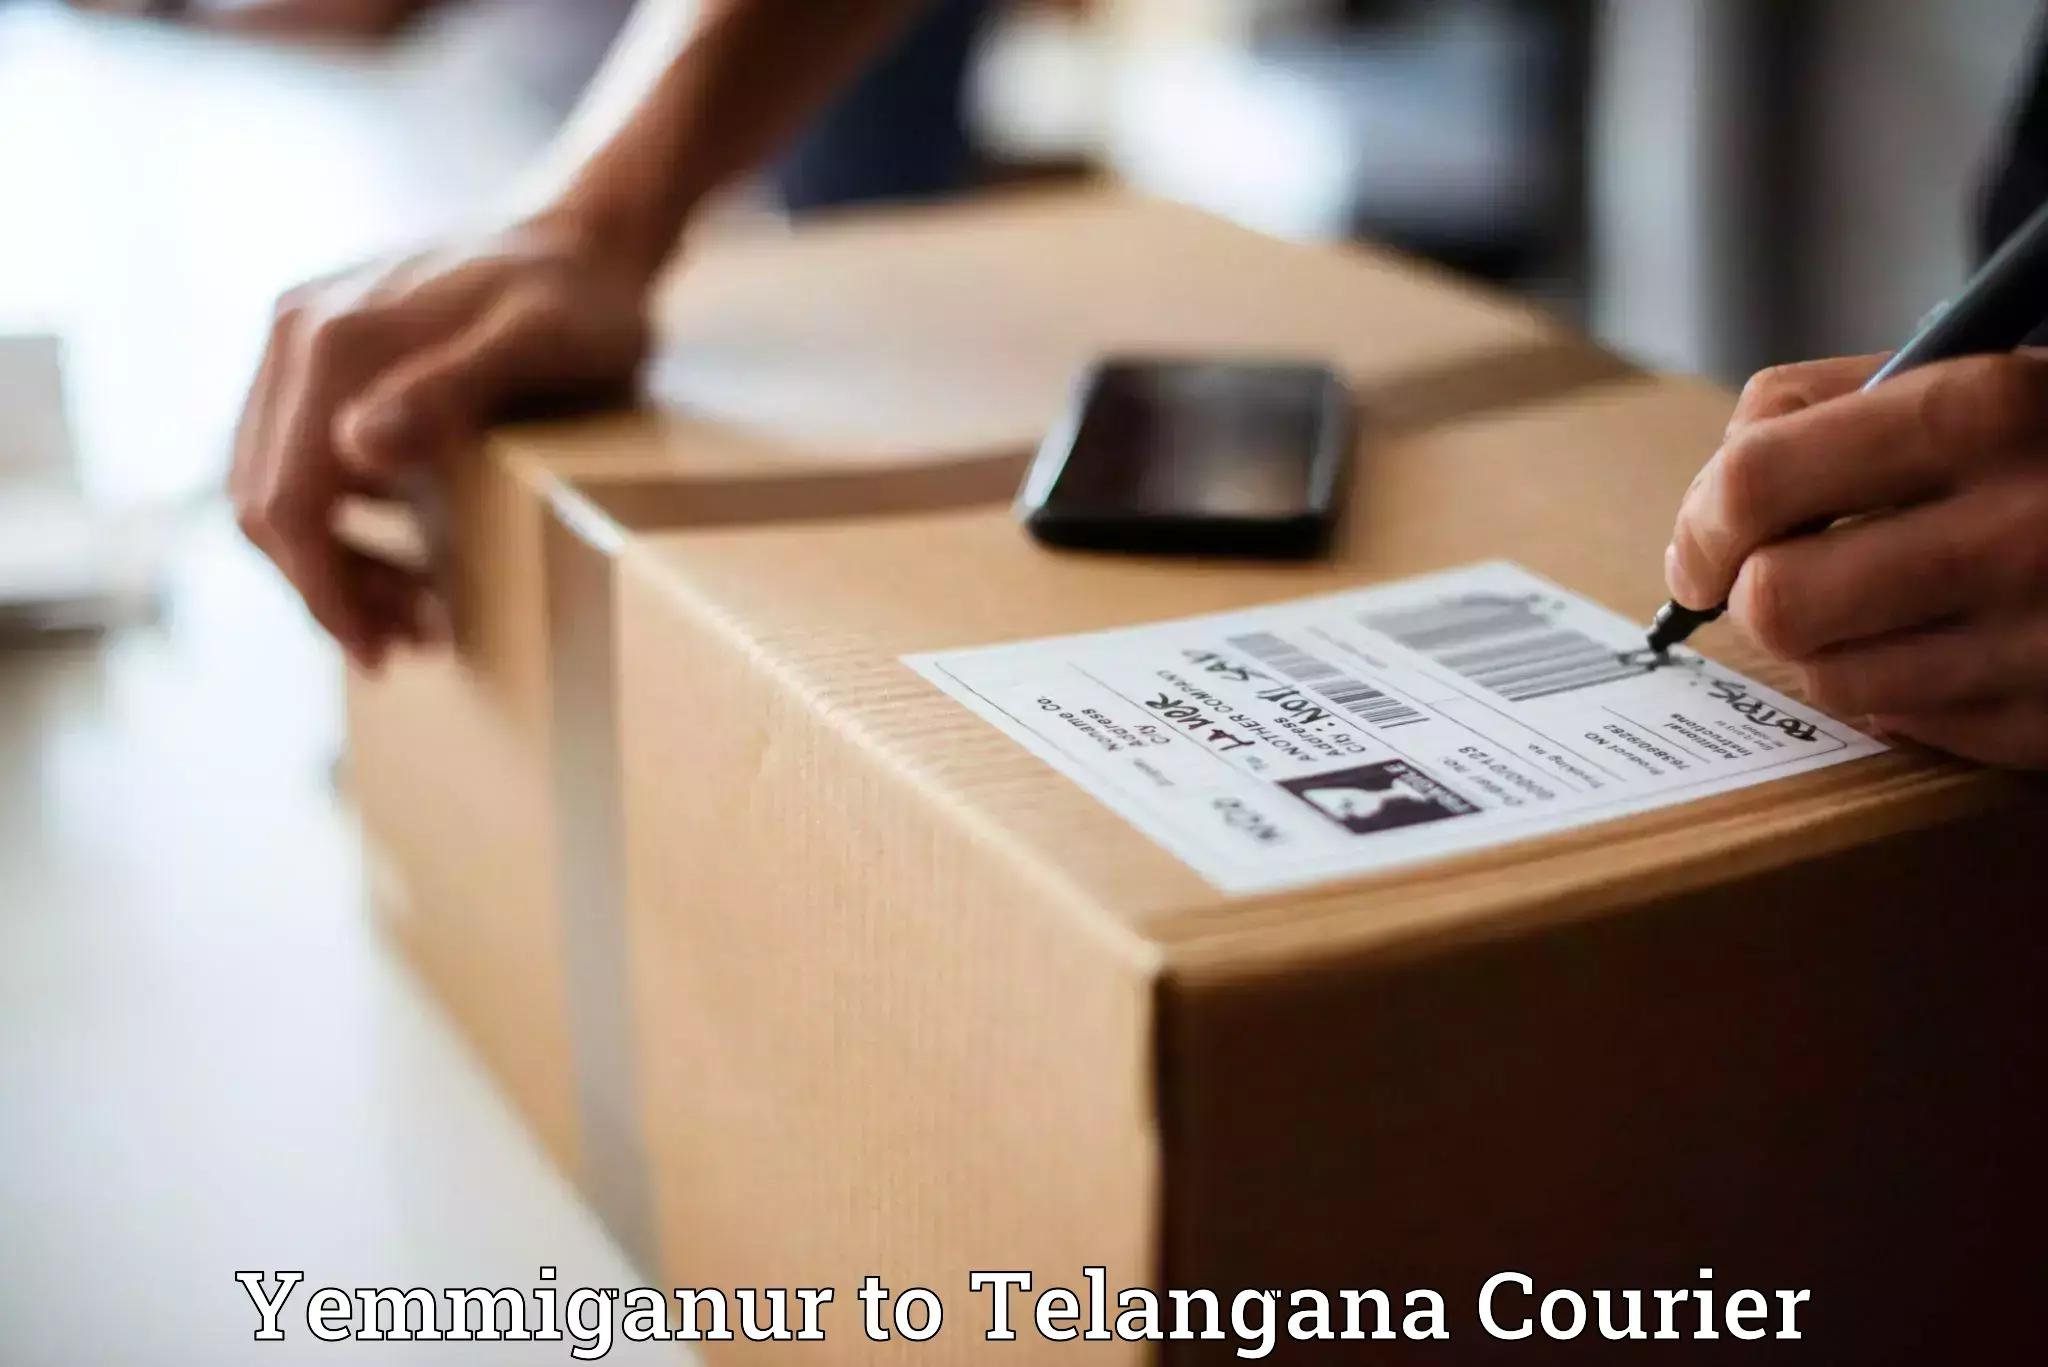 Reliable package handling Yemmiganur to Narsampet